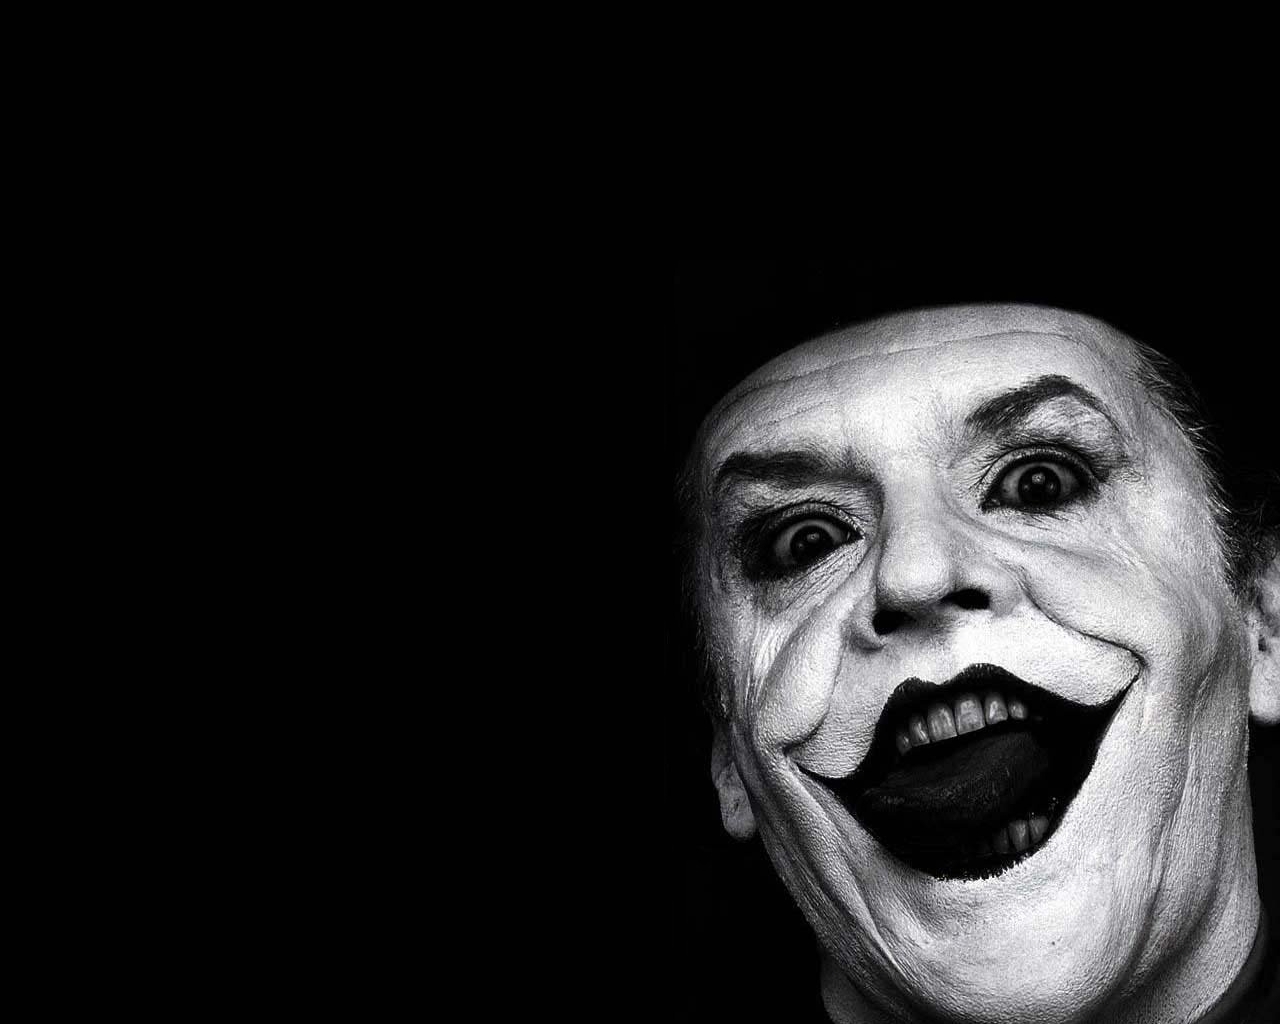 The-Joker-the-joker-1421008-1280-1024.jpg